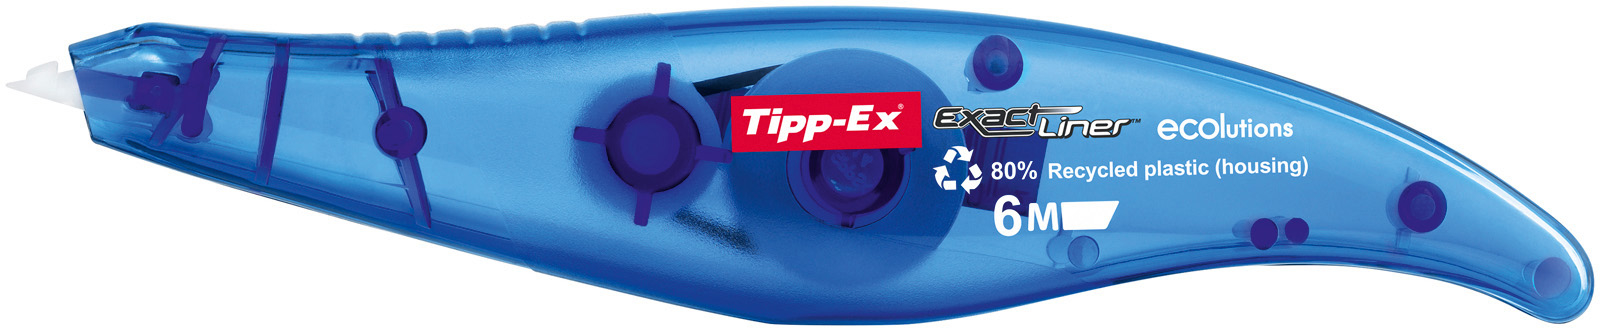 TIPP-EX Rouleaux correction Exactliner 868.0772 ECOlution, Blister 5mmx6m ECOlution, Blister 5mmx6m